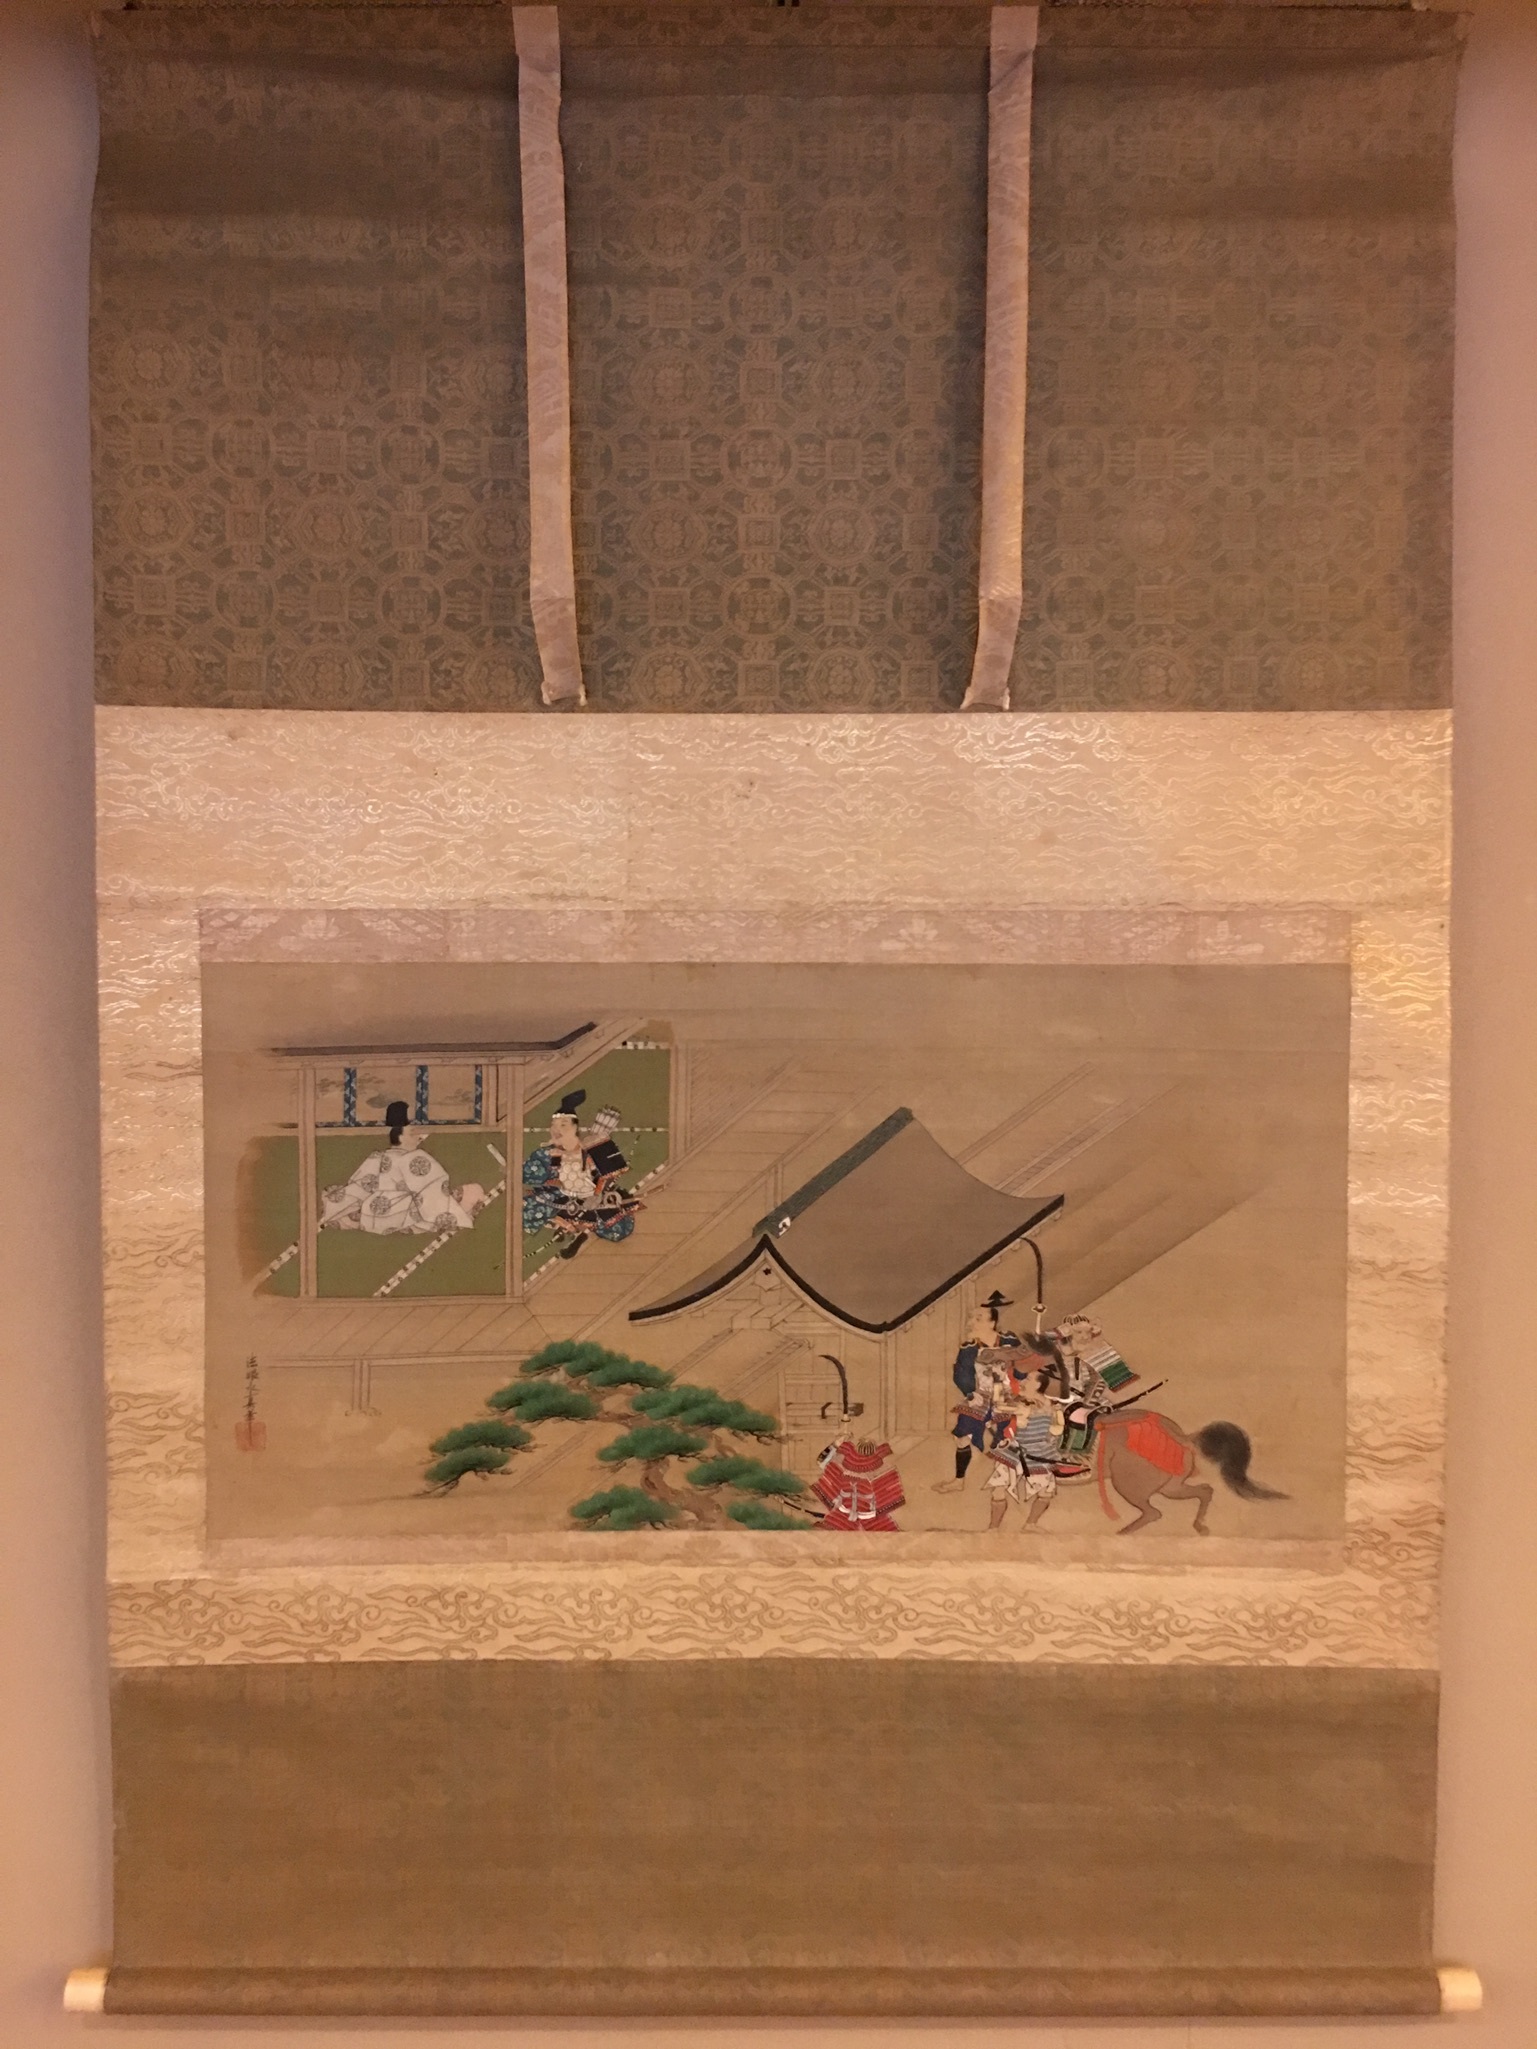 日本在庫狩野安信　『双鶴之図』　紙本　掛軸　no172 花鳥、鳥獣